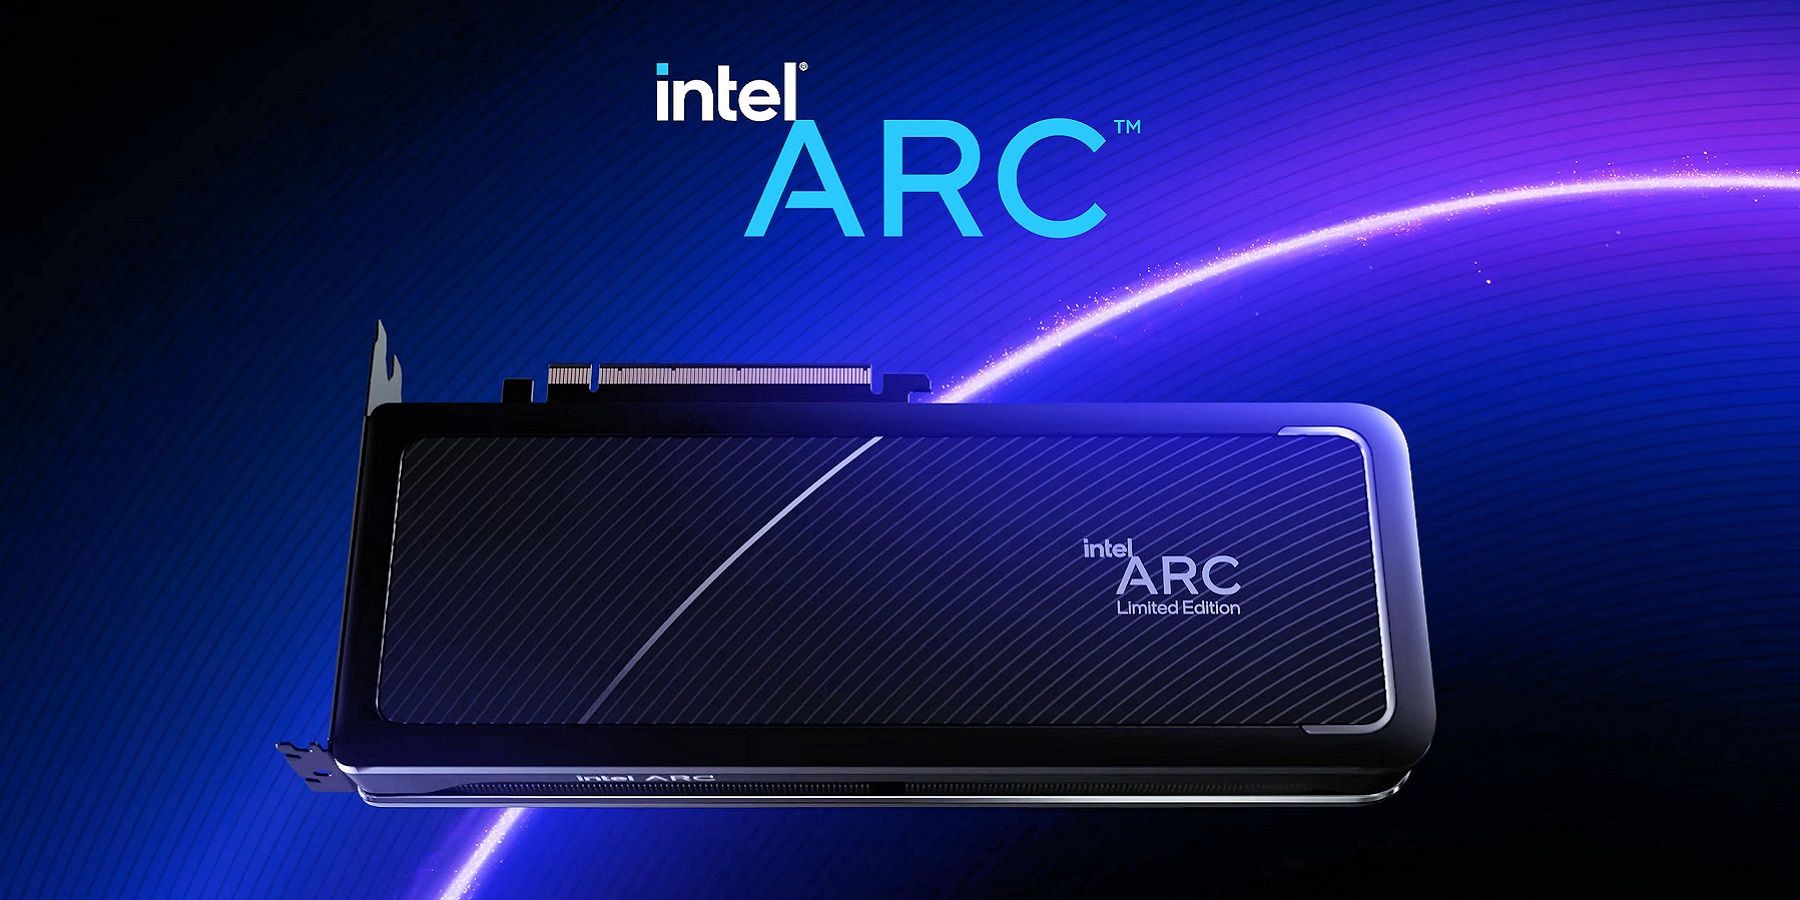 Изображение видеокарты Intel Arc на сине-фиолетовом фоне.